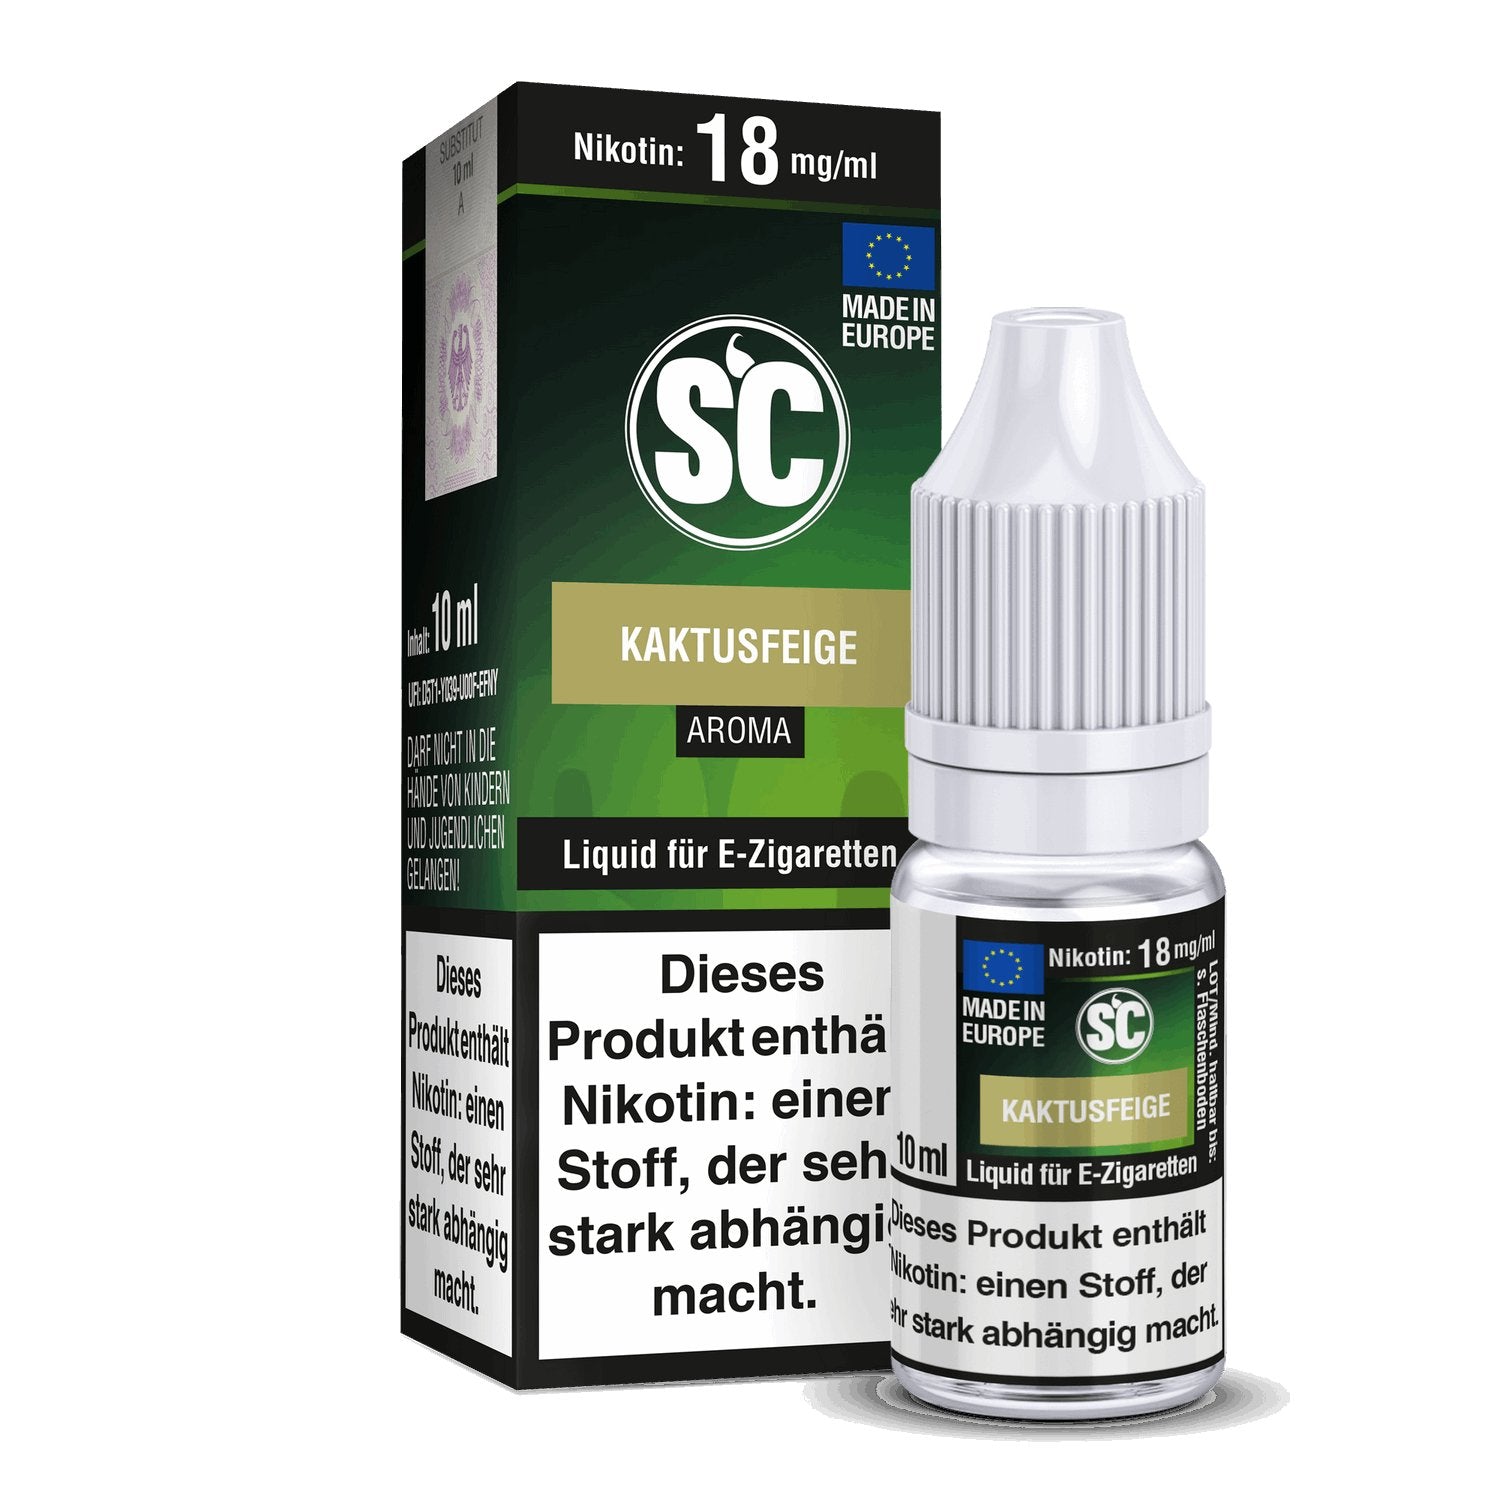 SC - Kaktusfeige - 10ml Fertigliquid (Nikotinfrei/Nikotin) - 1er Packung 0 mg/ml - Vapes4you